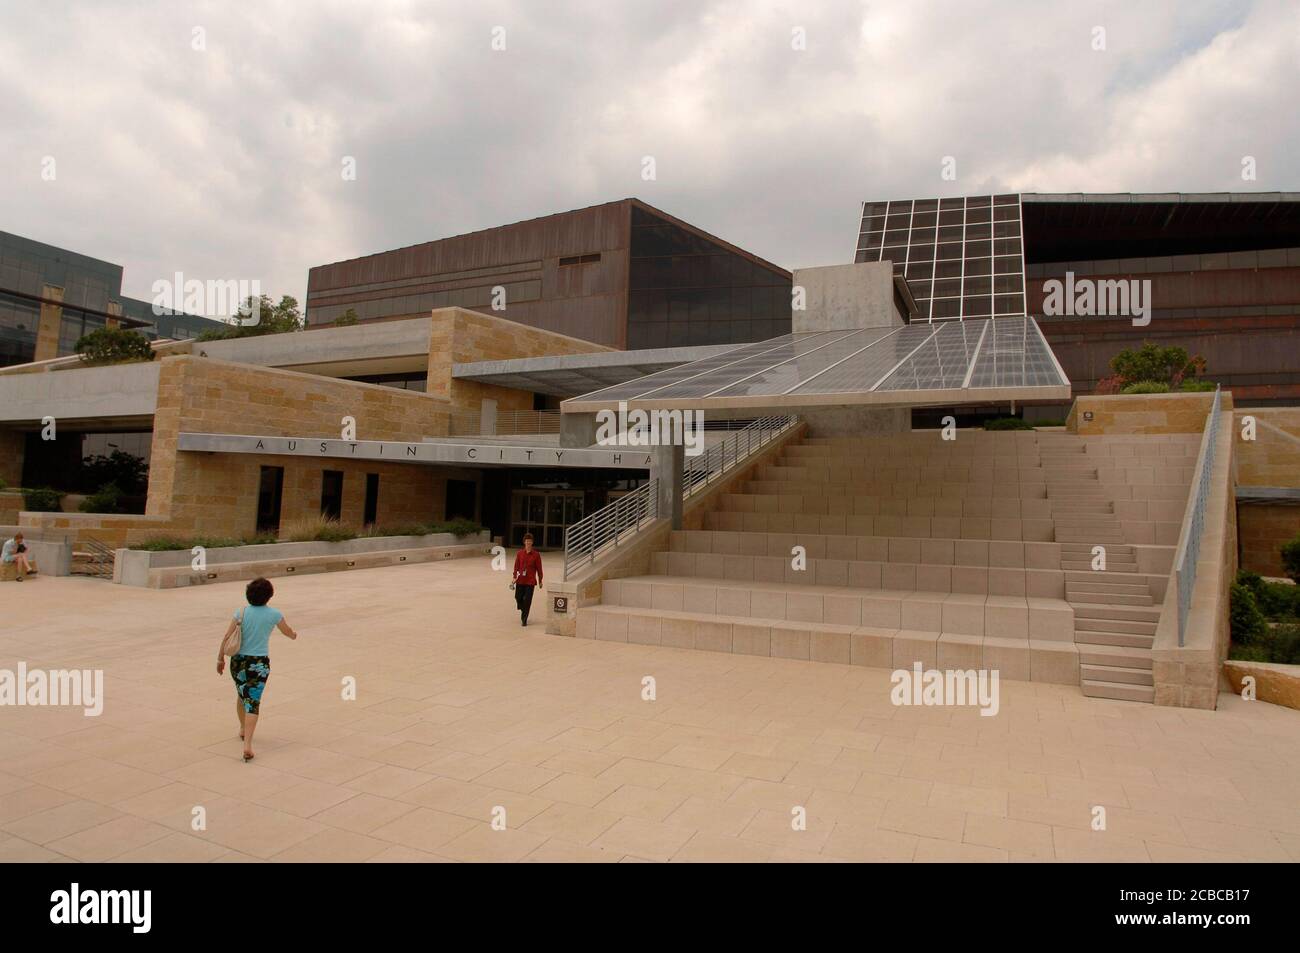 Austin Texas USA, 4. Mai 2006: Das Rathaus, das vom Architekten Antoine Predock entworfen und 2004 fertiggestellt wurde, besteht aus recyceltem Kupfer und Kalkstein und verfügt über Solarpaneele in seinem umweltfreundlichen Design. ©Bob Daemmrich Stockfoto